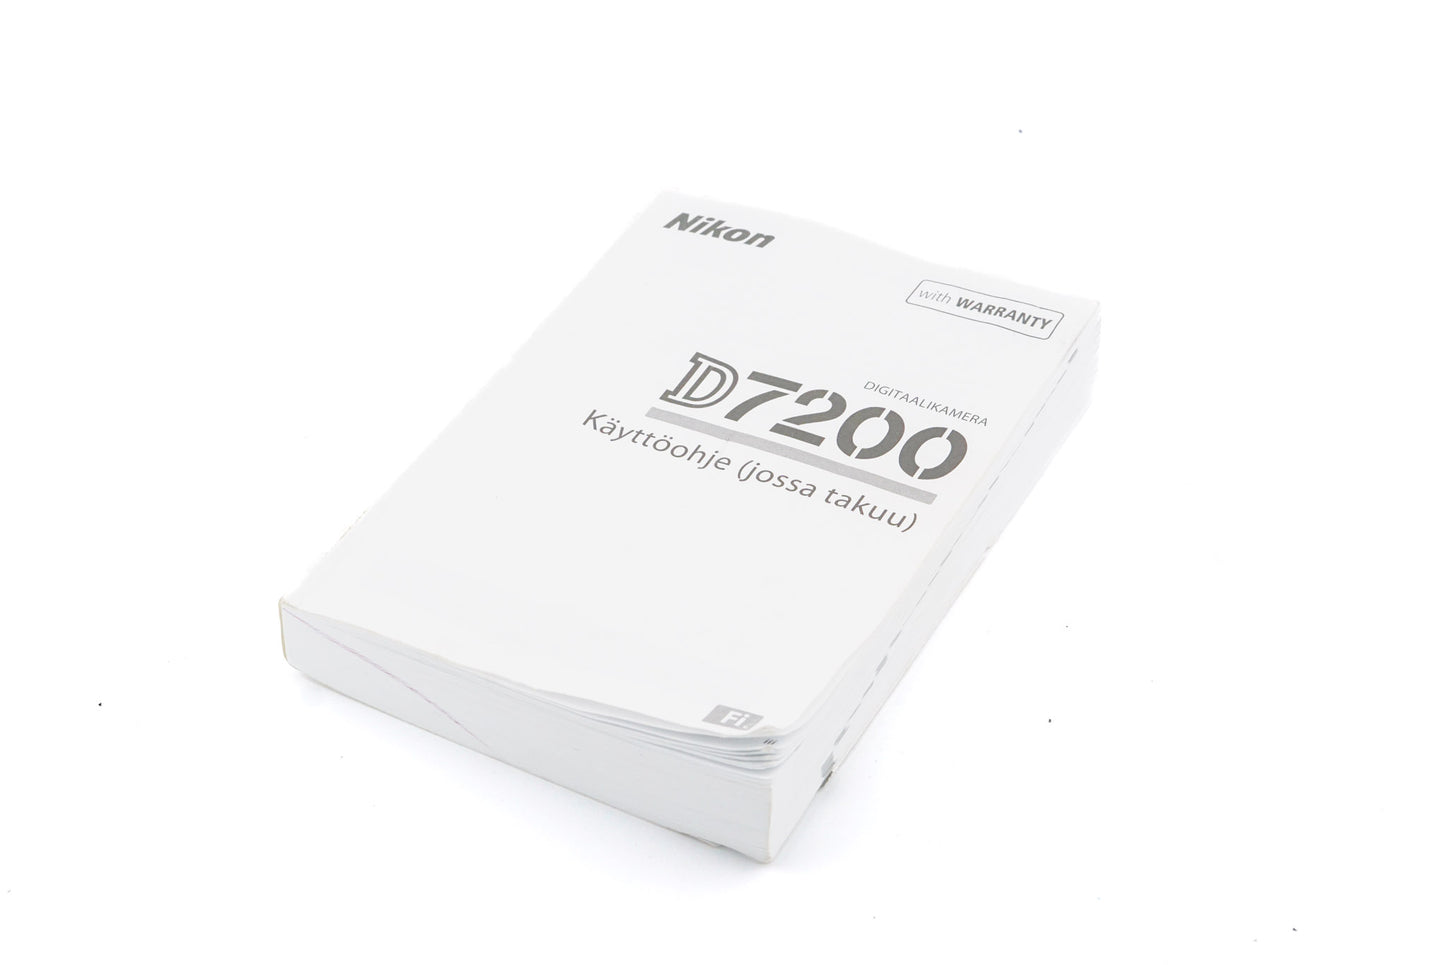 Nikon D7200 Instructions